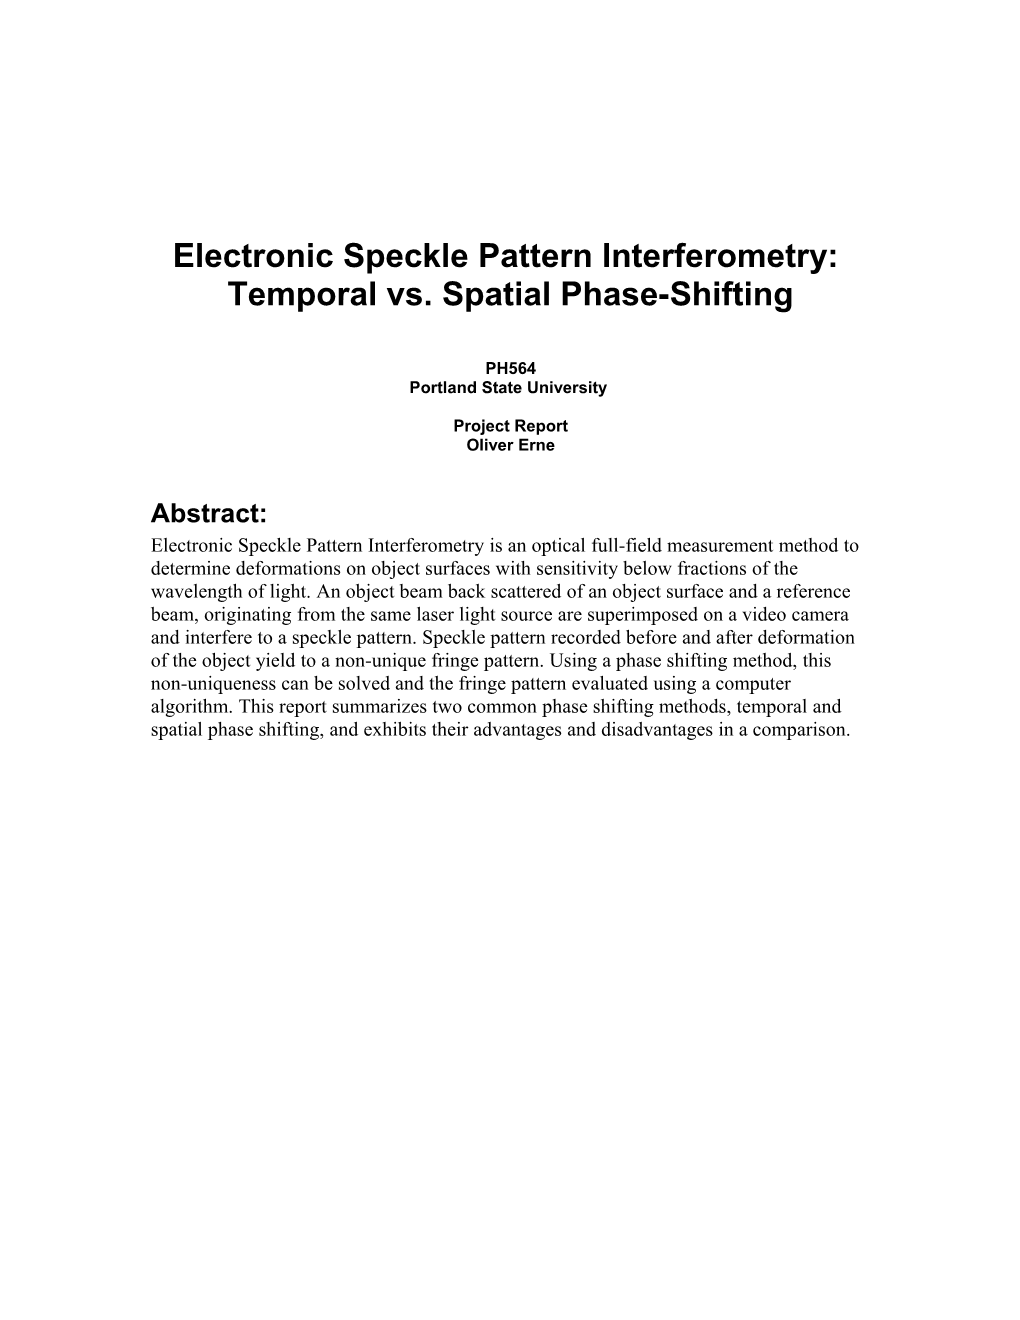 Electronic Speckle Pattern Interferometry